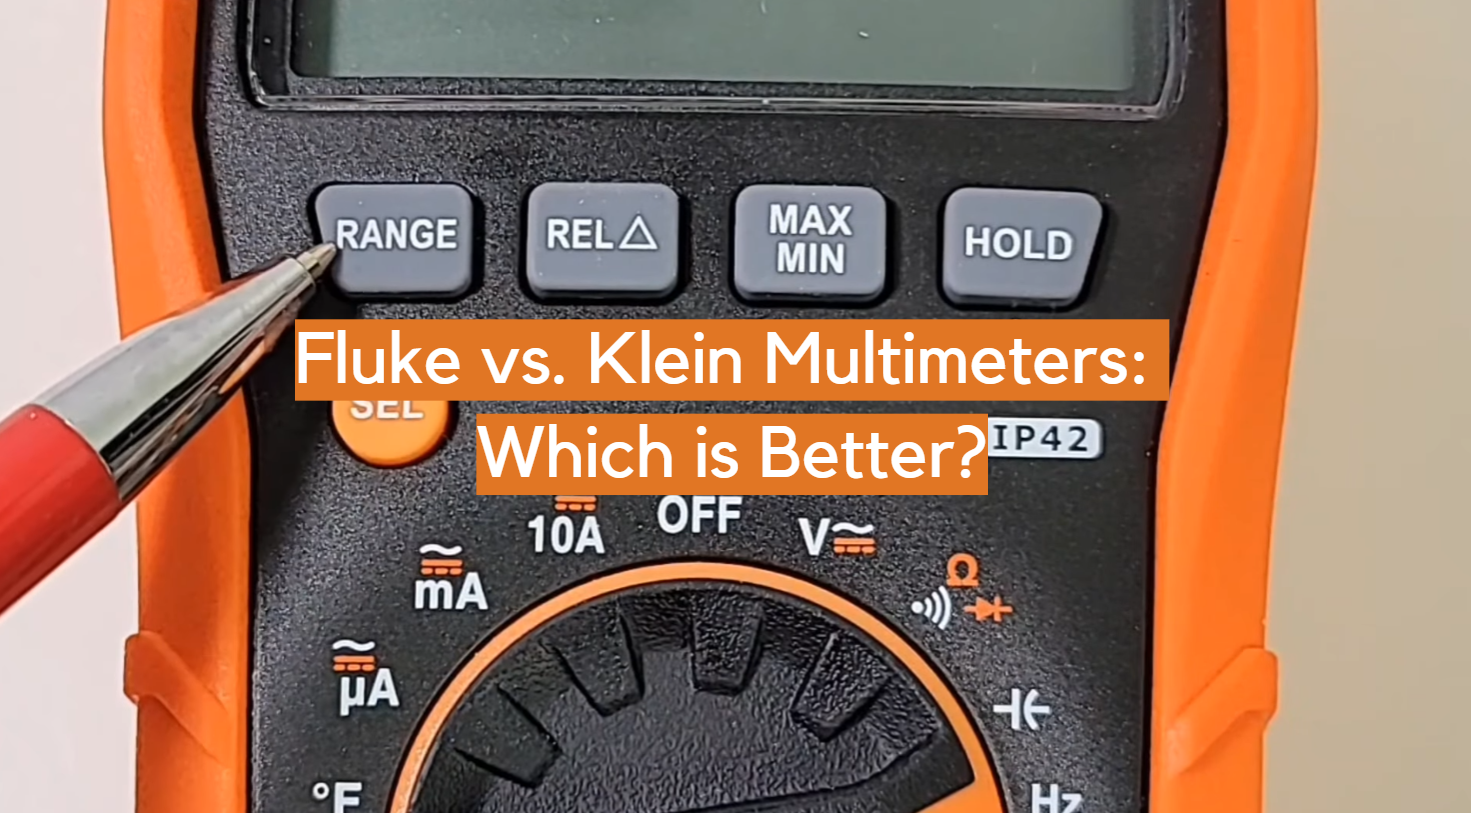 Fluke vs. Klein Multimeters: Which is Better?